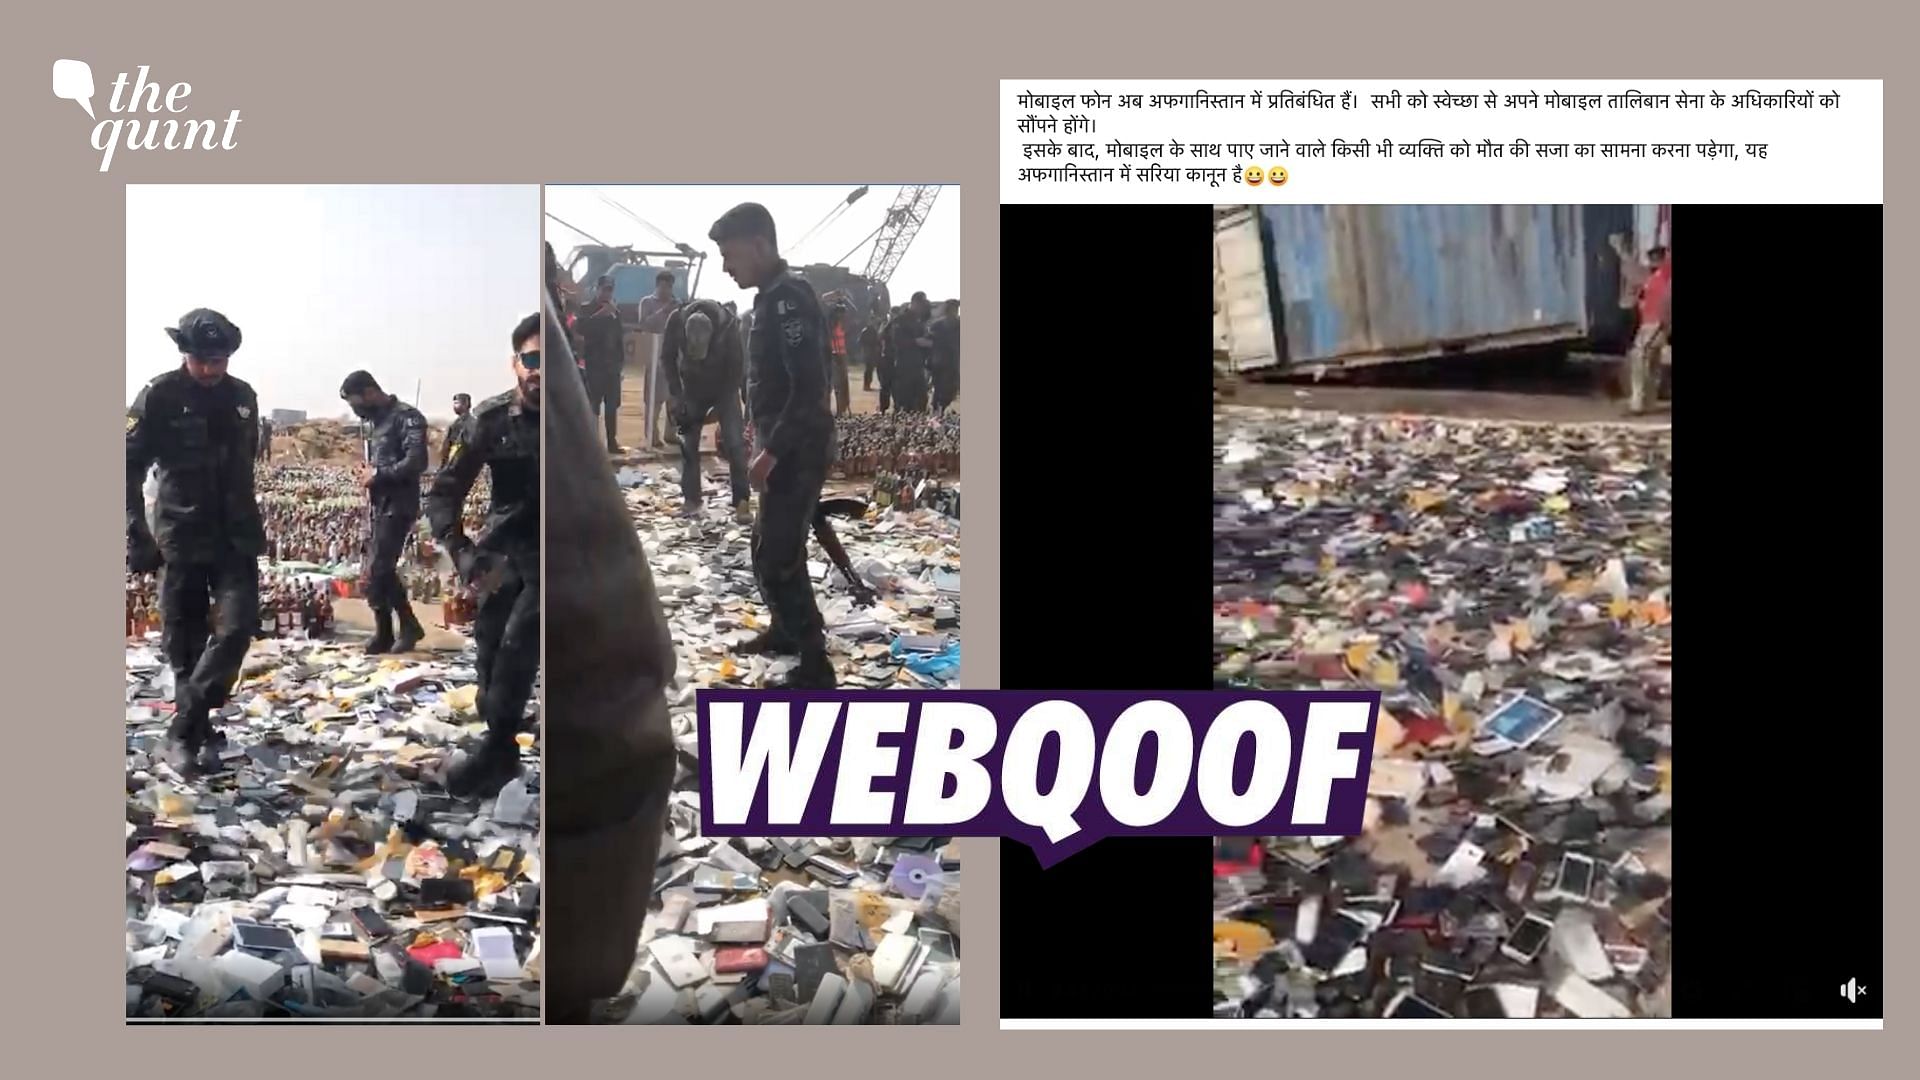 <div class="paragraphs"><p>The video shows Pakistan's Customs officials destroying seized goods.</p></div>